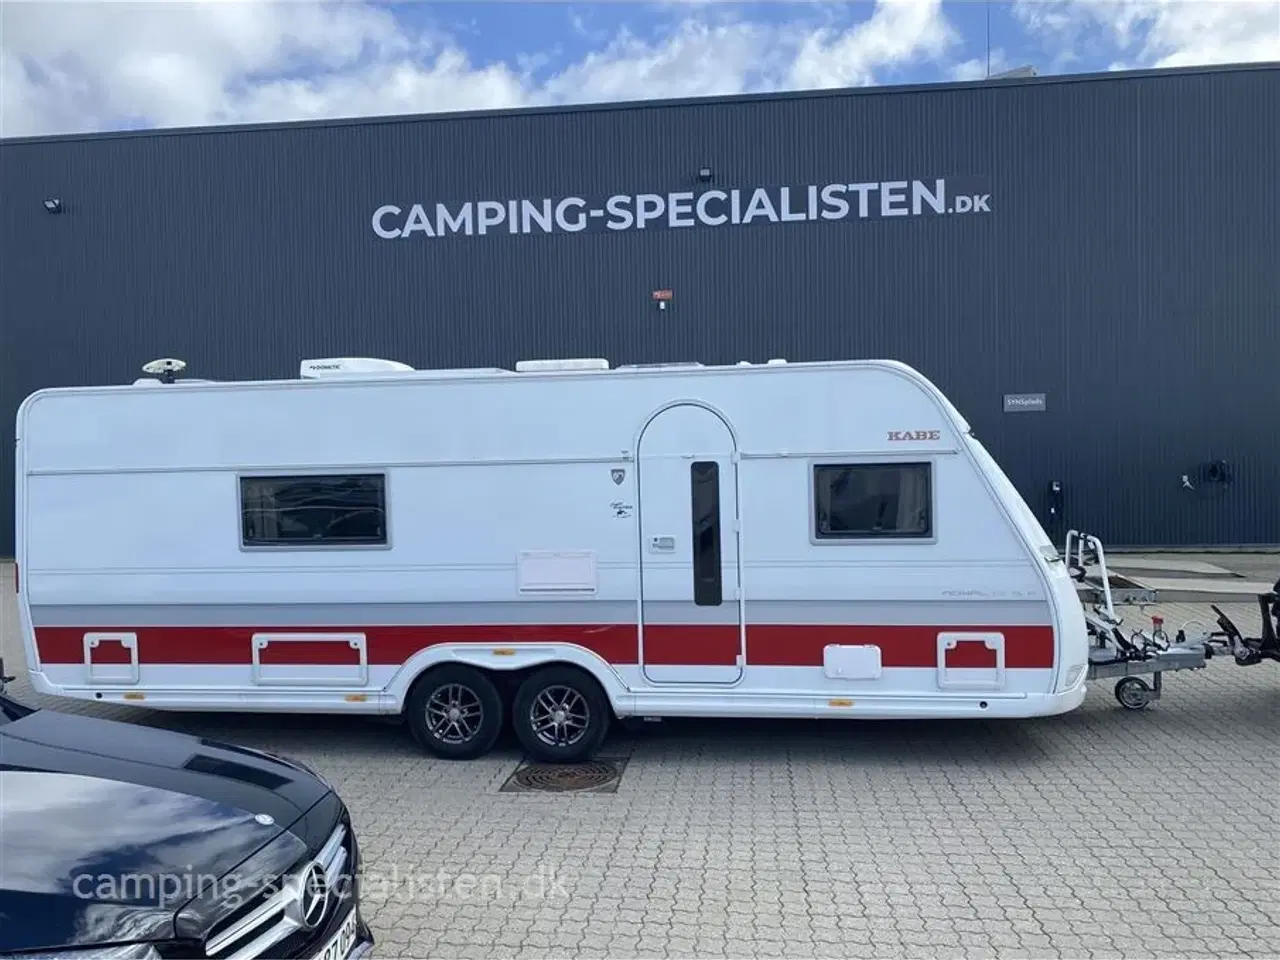 Billede 1 - 2018 - Kabe Royal 630 E TDL   Kabe Royal 630 TDL/E model 2018 kan nu ses hos Camping Specialisten.dk